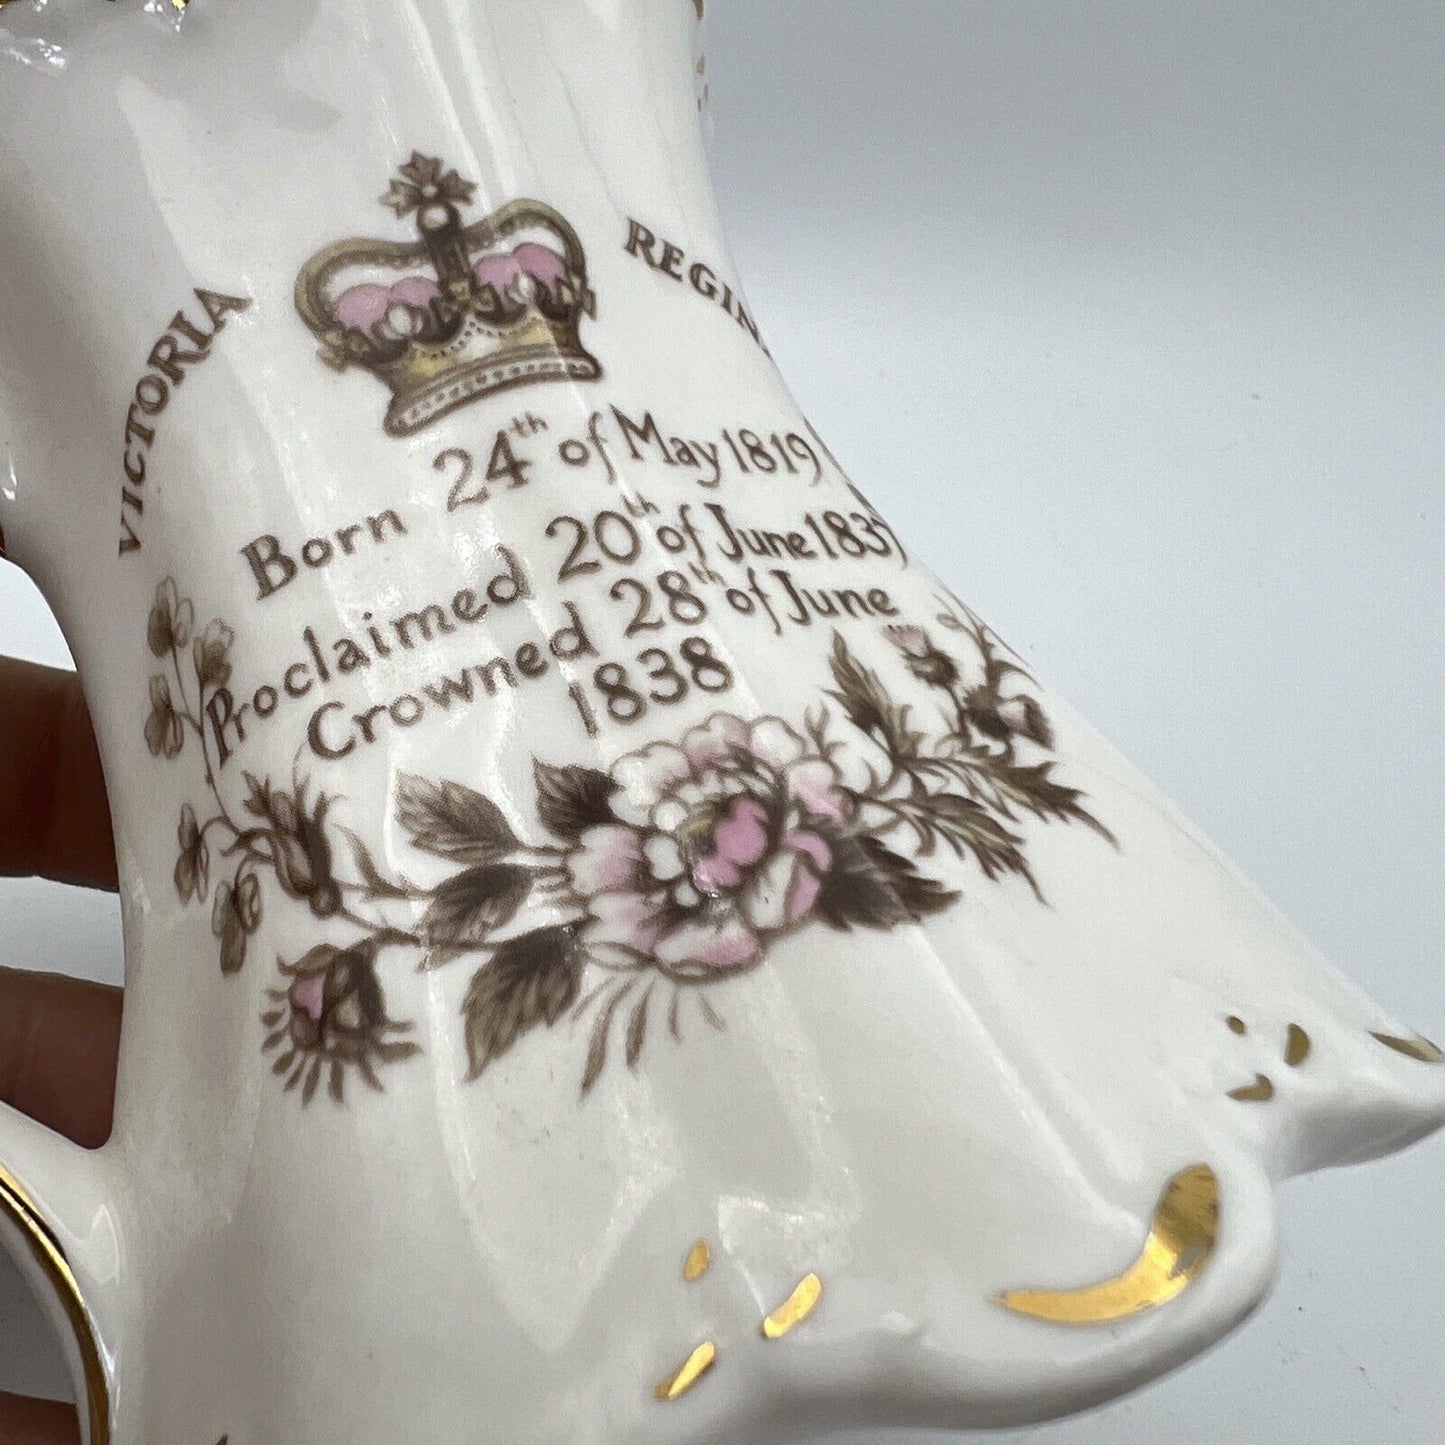 Tazza Boccale Inglese da collezione Regina Vittoria Casa Reale commemorativa '80